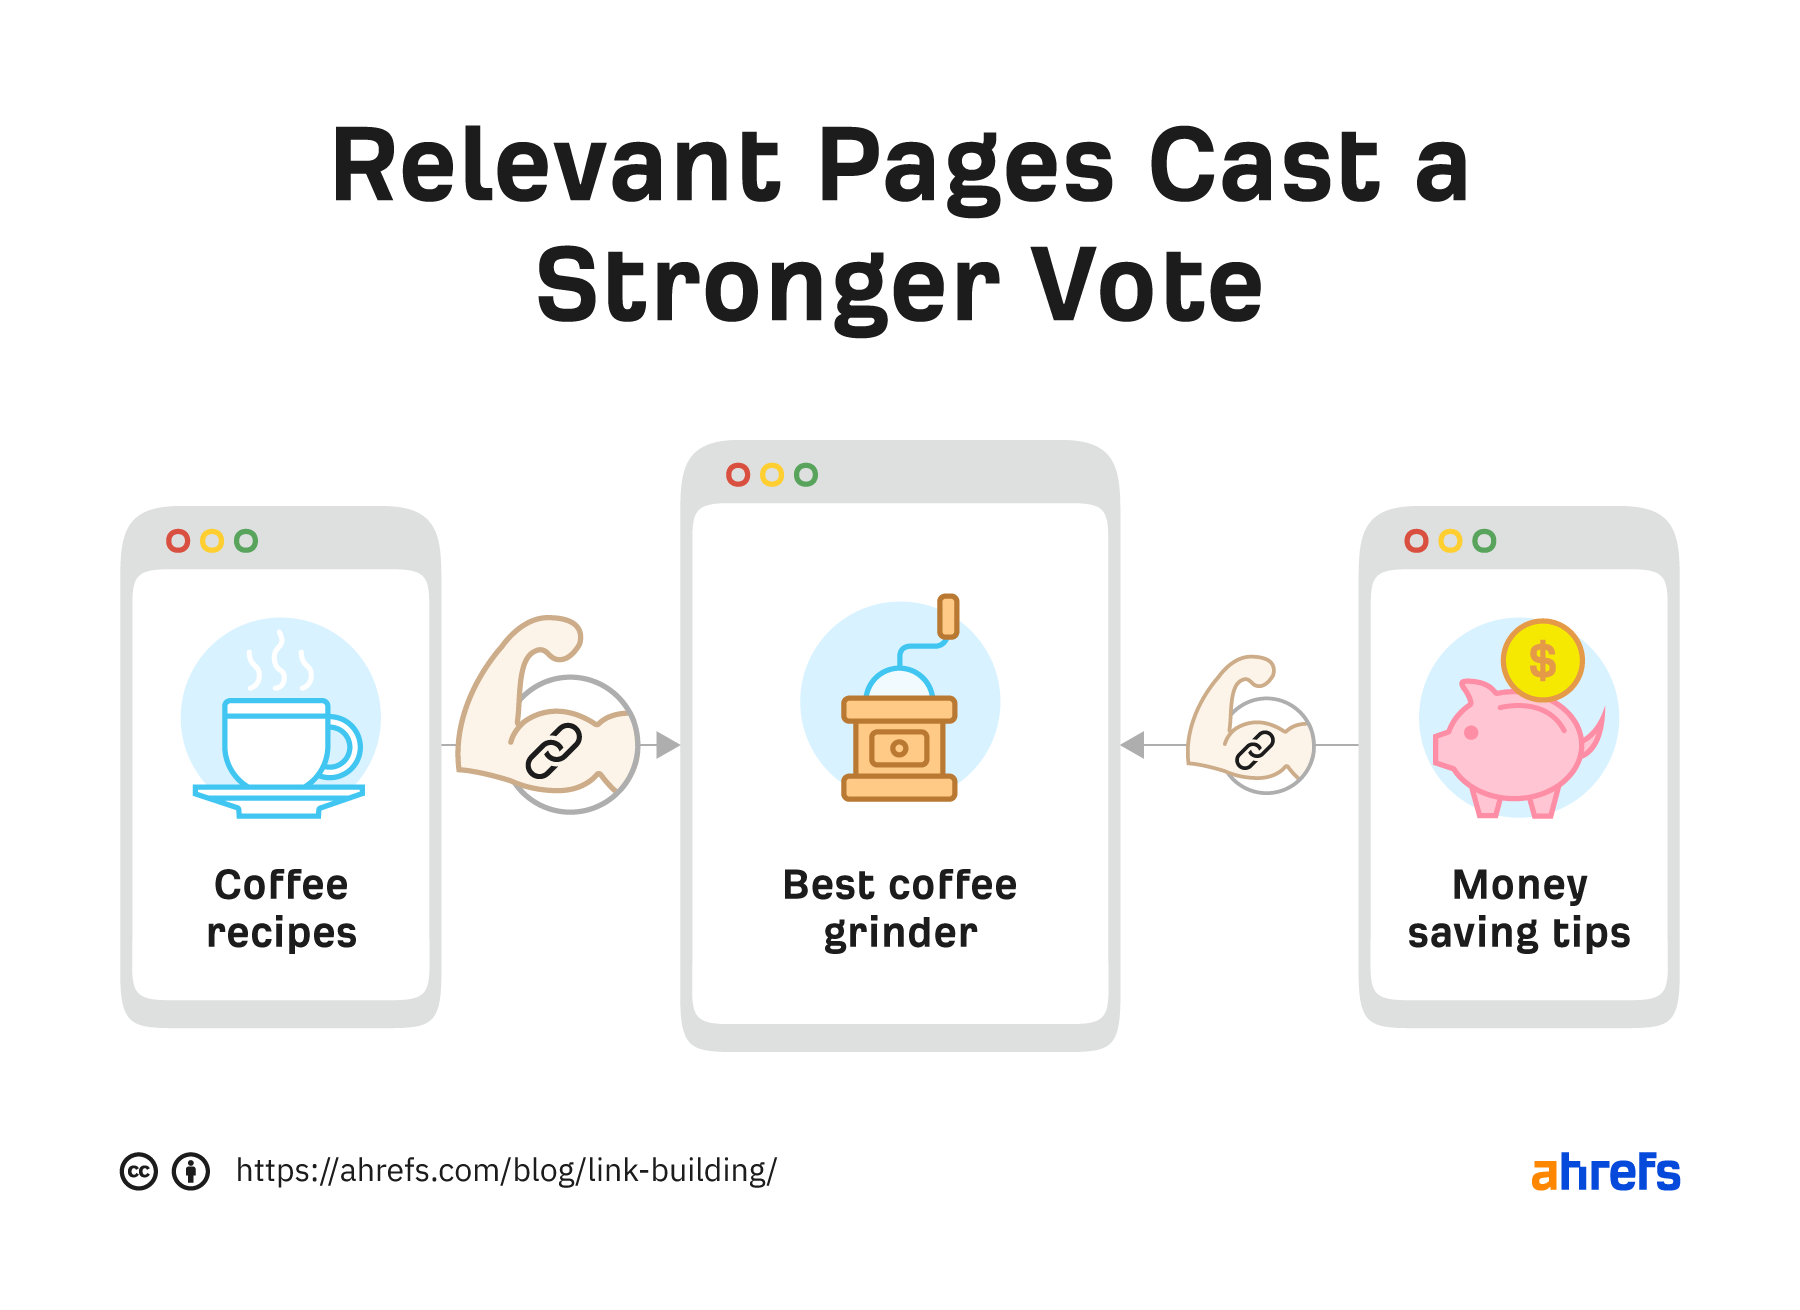 为主题性权威的相关网页建立链接，投下更强力的一票